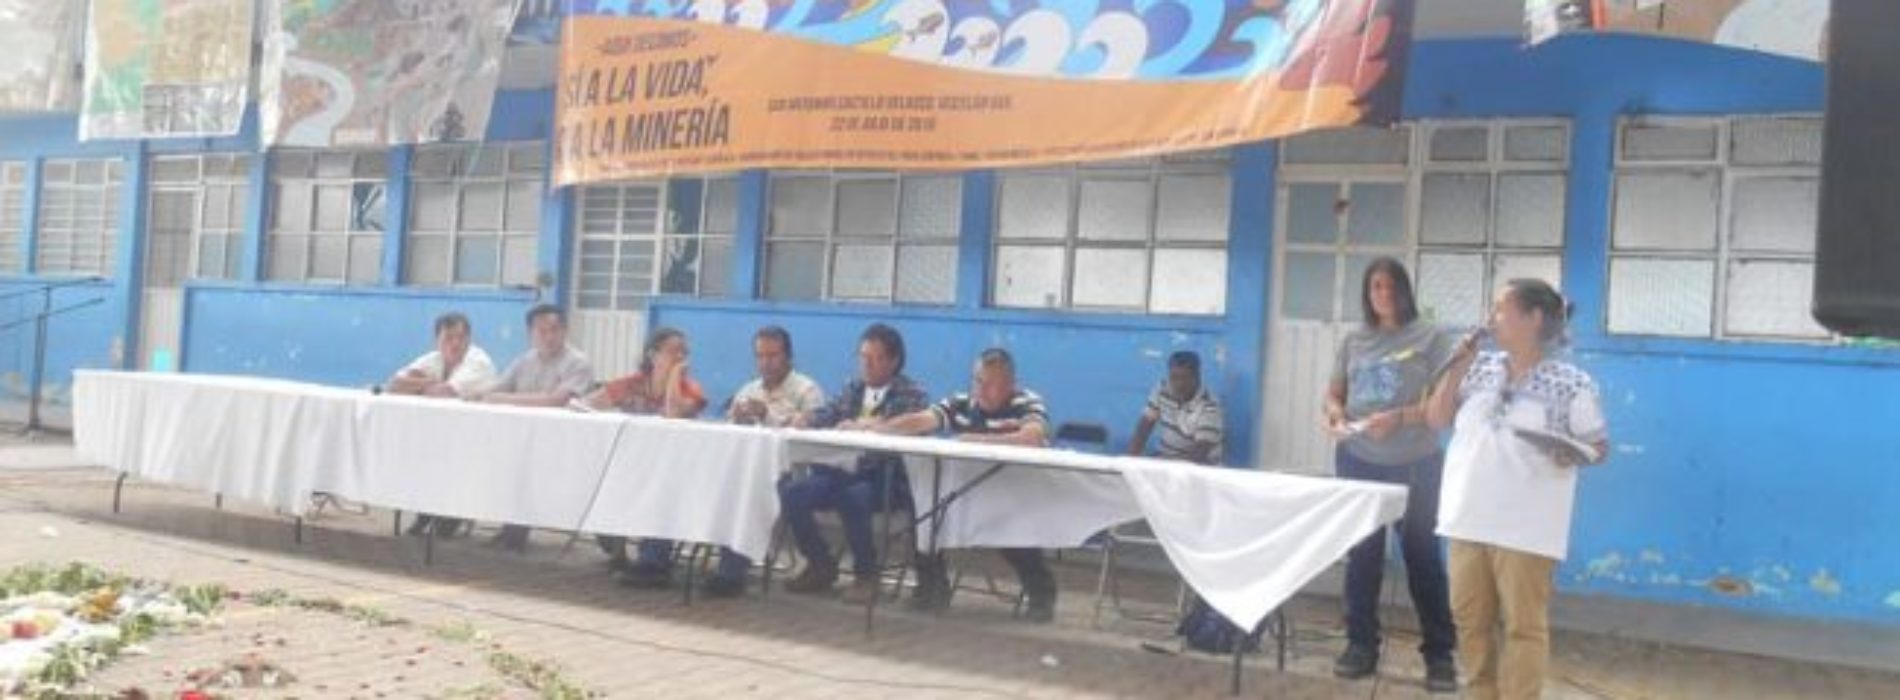 Indígenas conforman Asamblea contra la minería en
Oaxaca